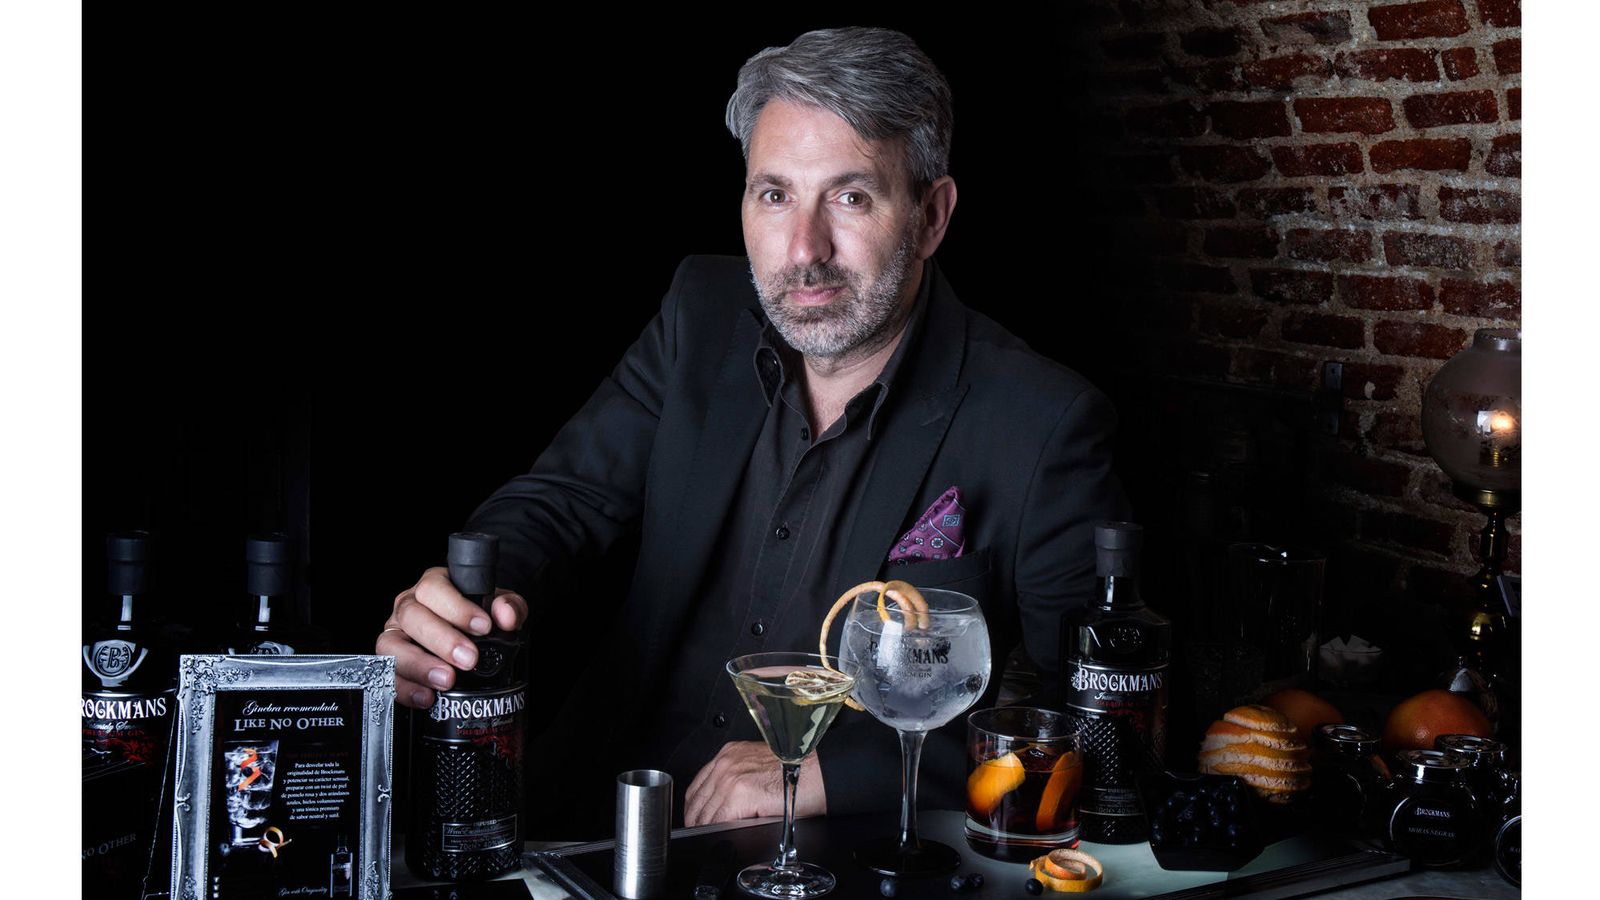 Robert McArdle: "Creamos una experiencia de sabor totalmente nueva en el mundo gin"